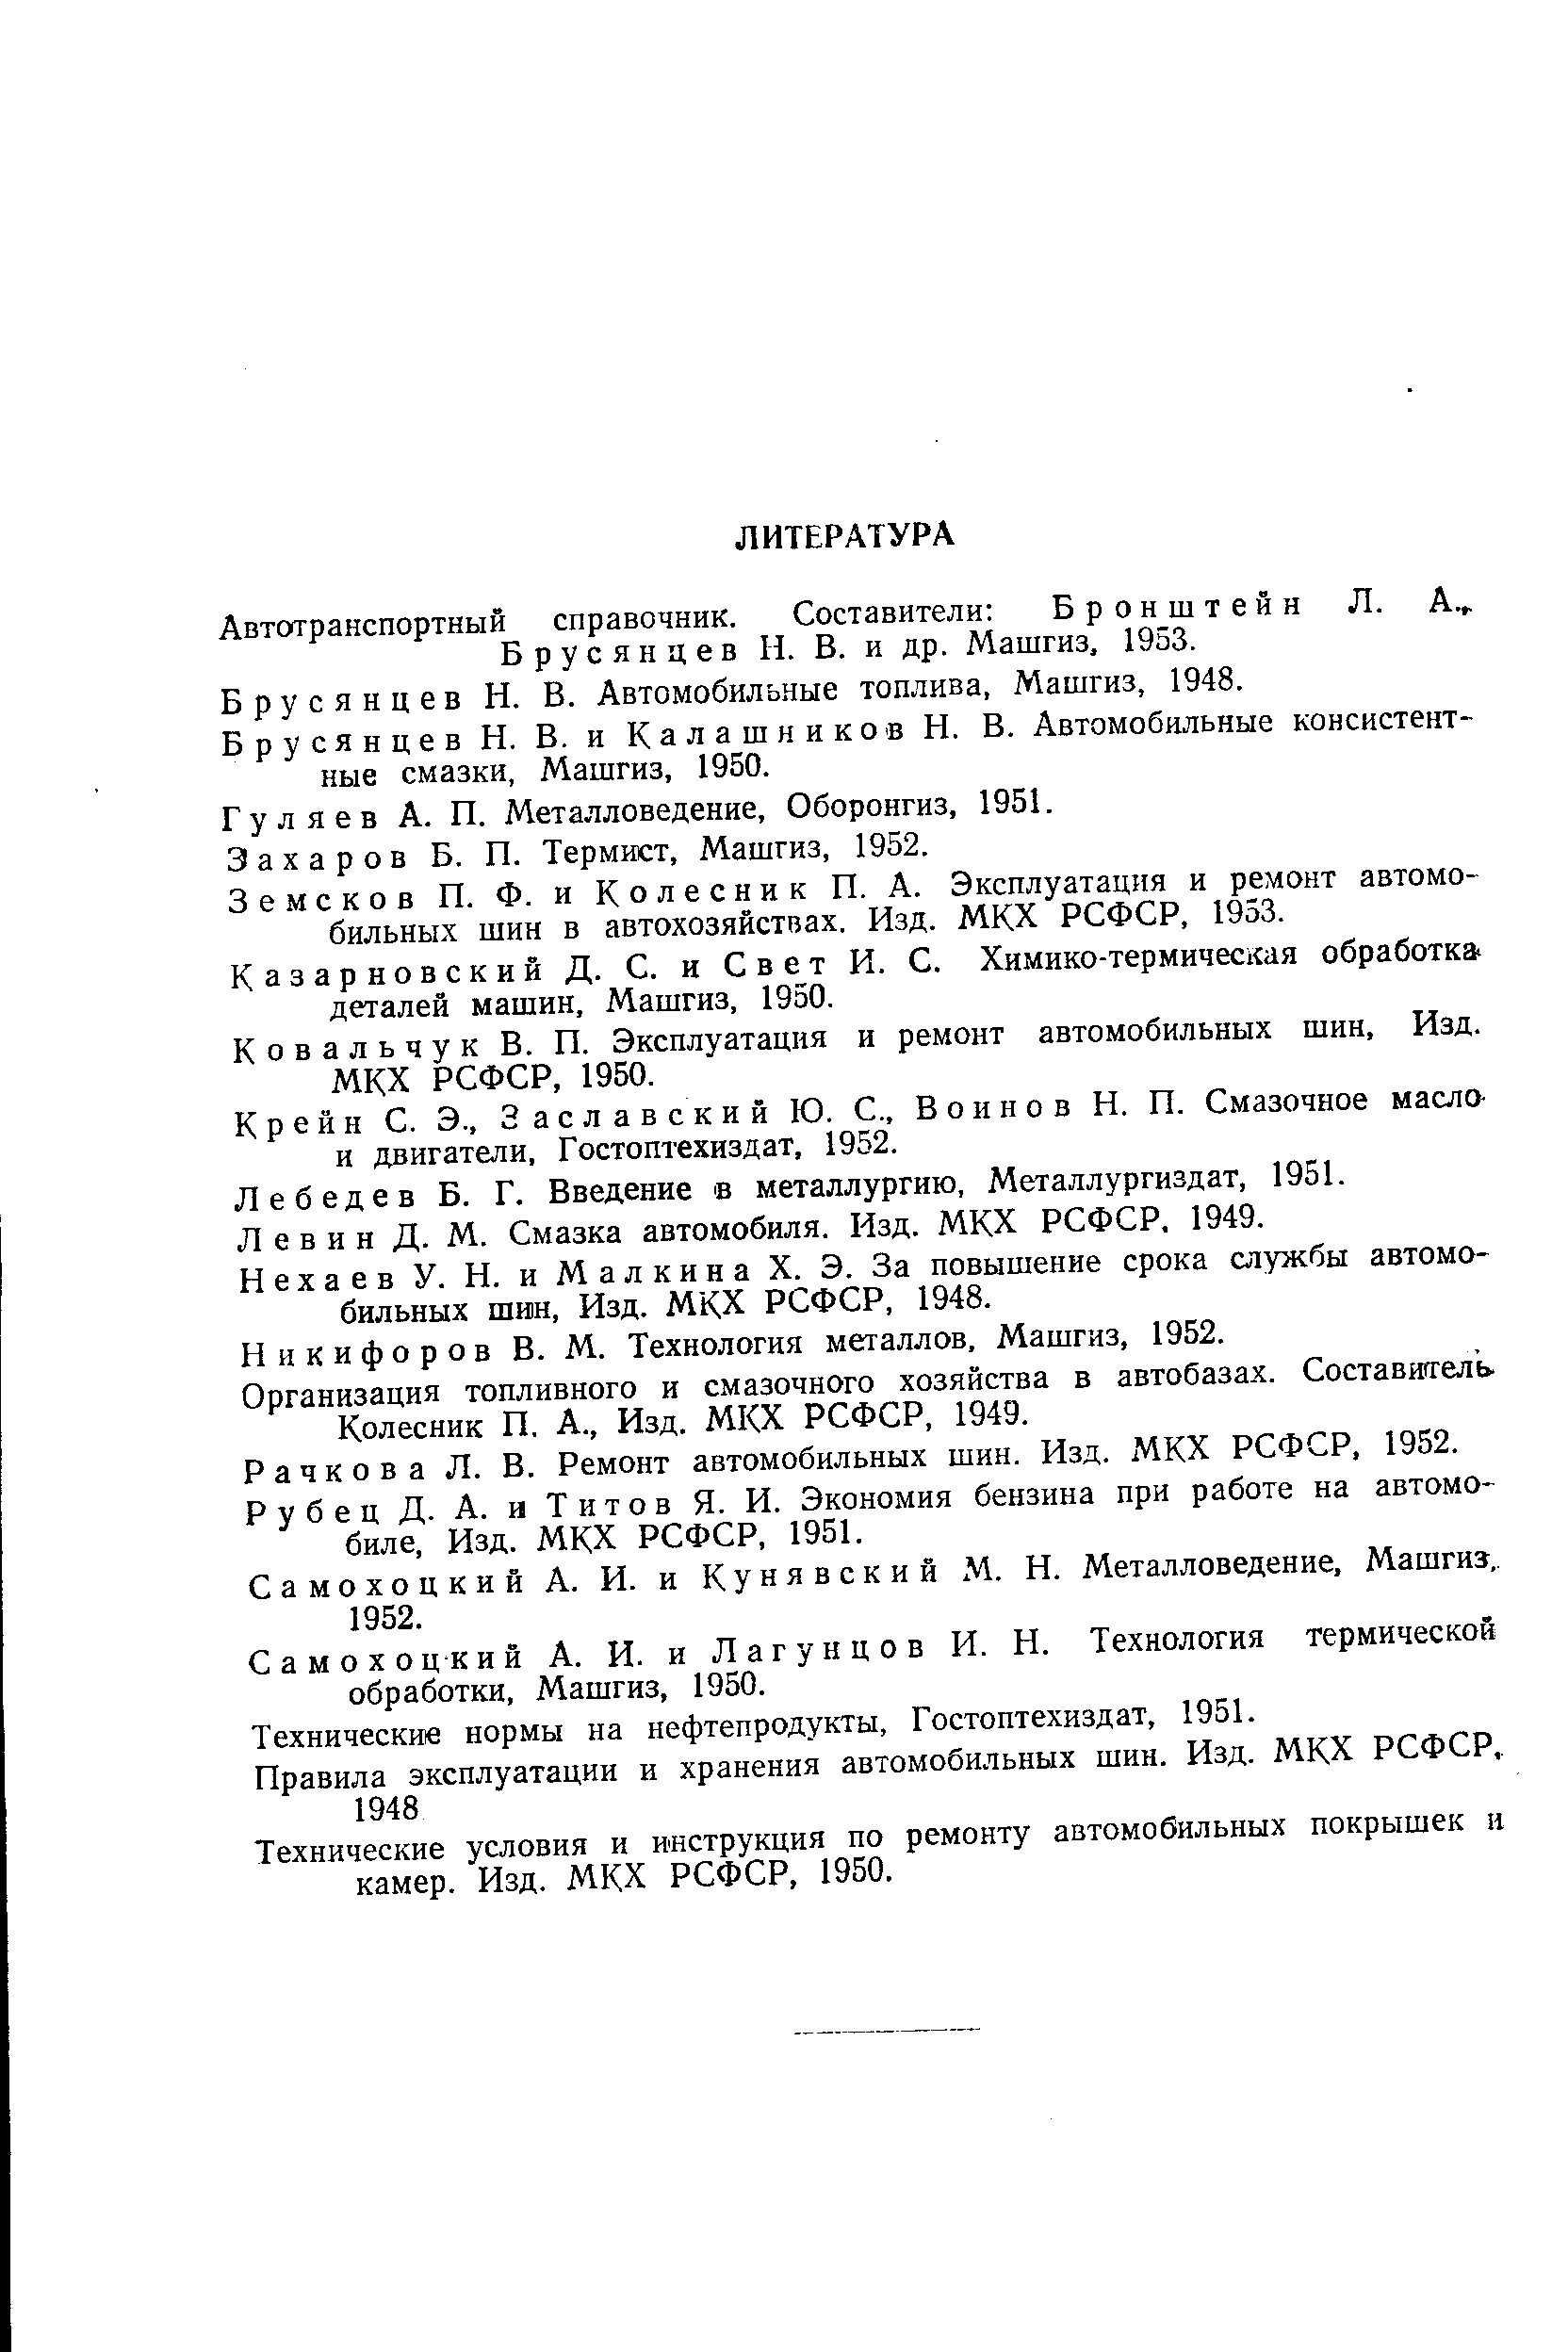 Гуляев А. П. Металловедение, Оборонгиз, 1951.
